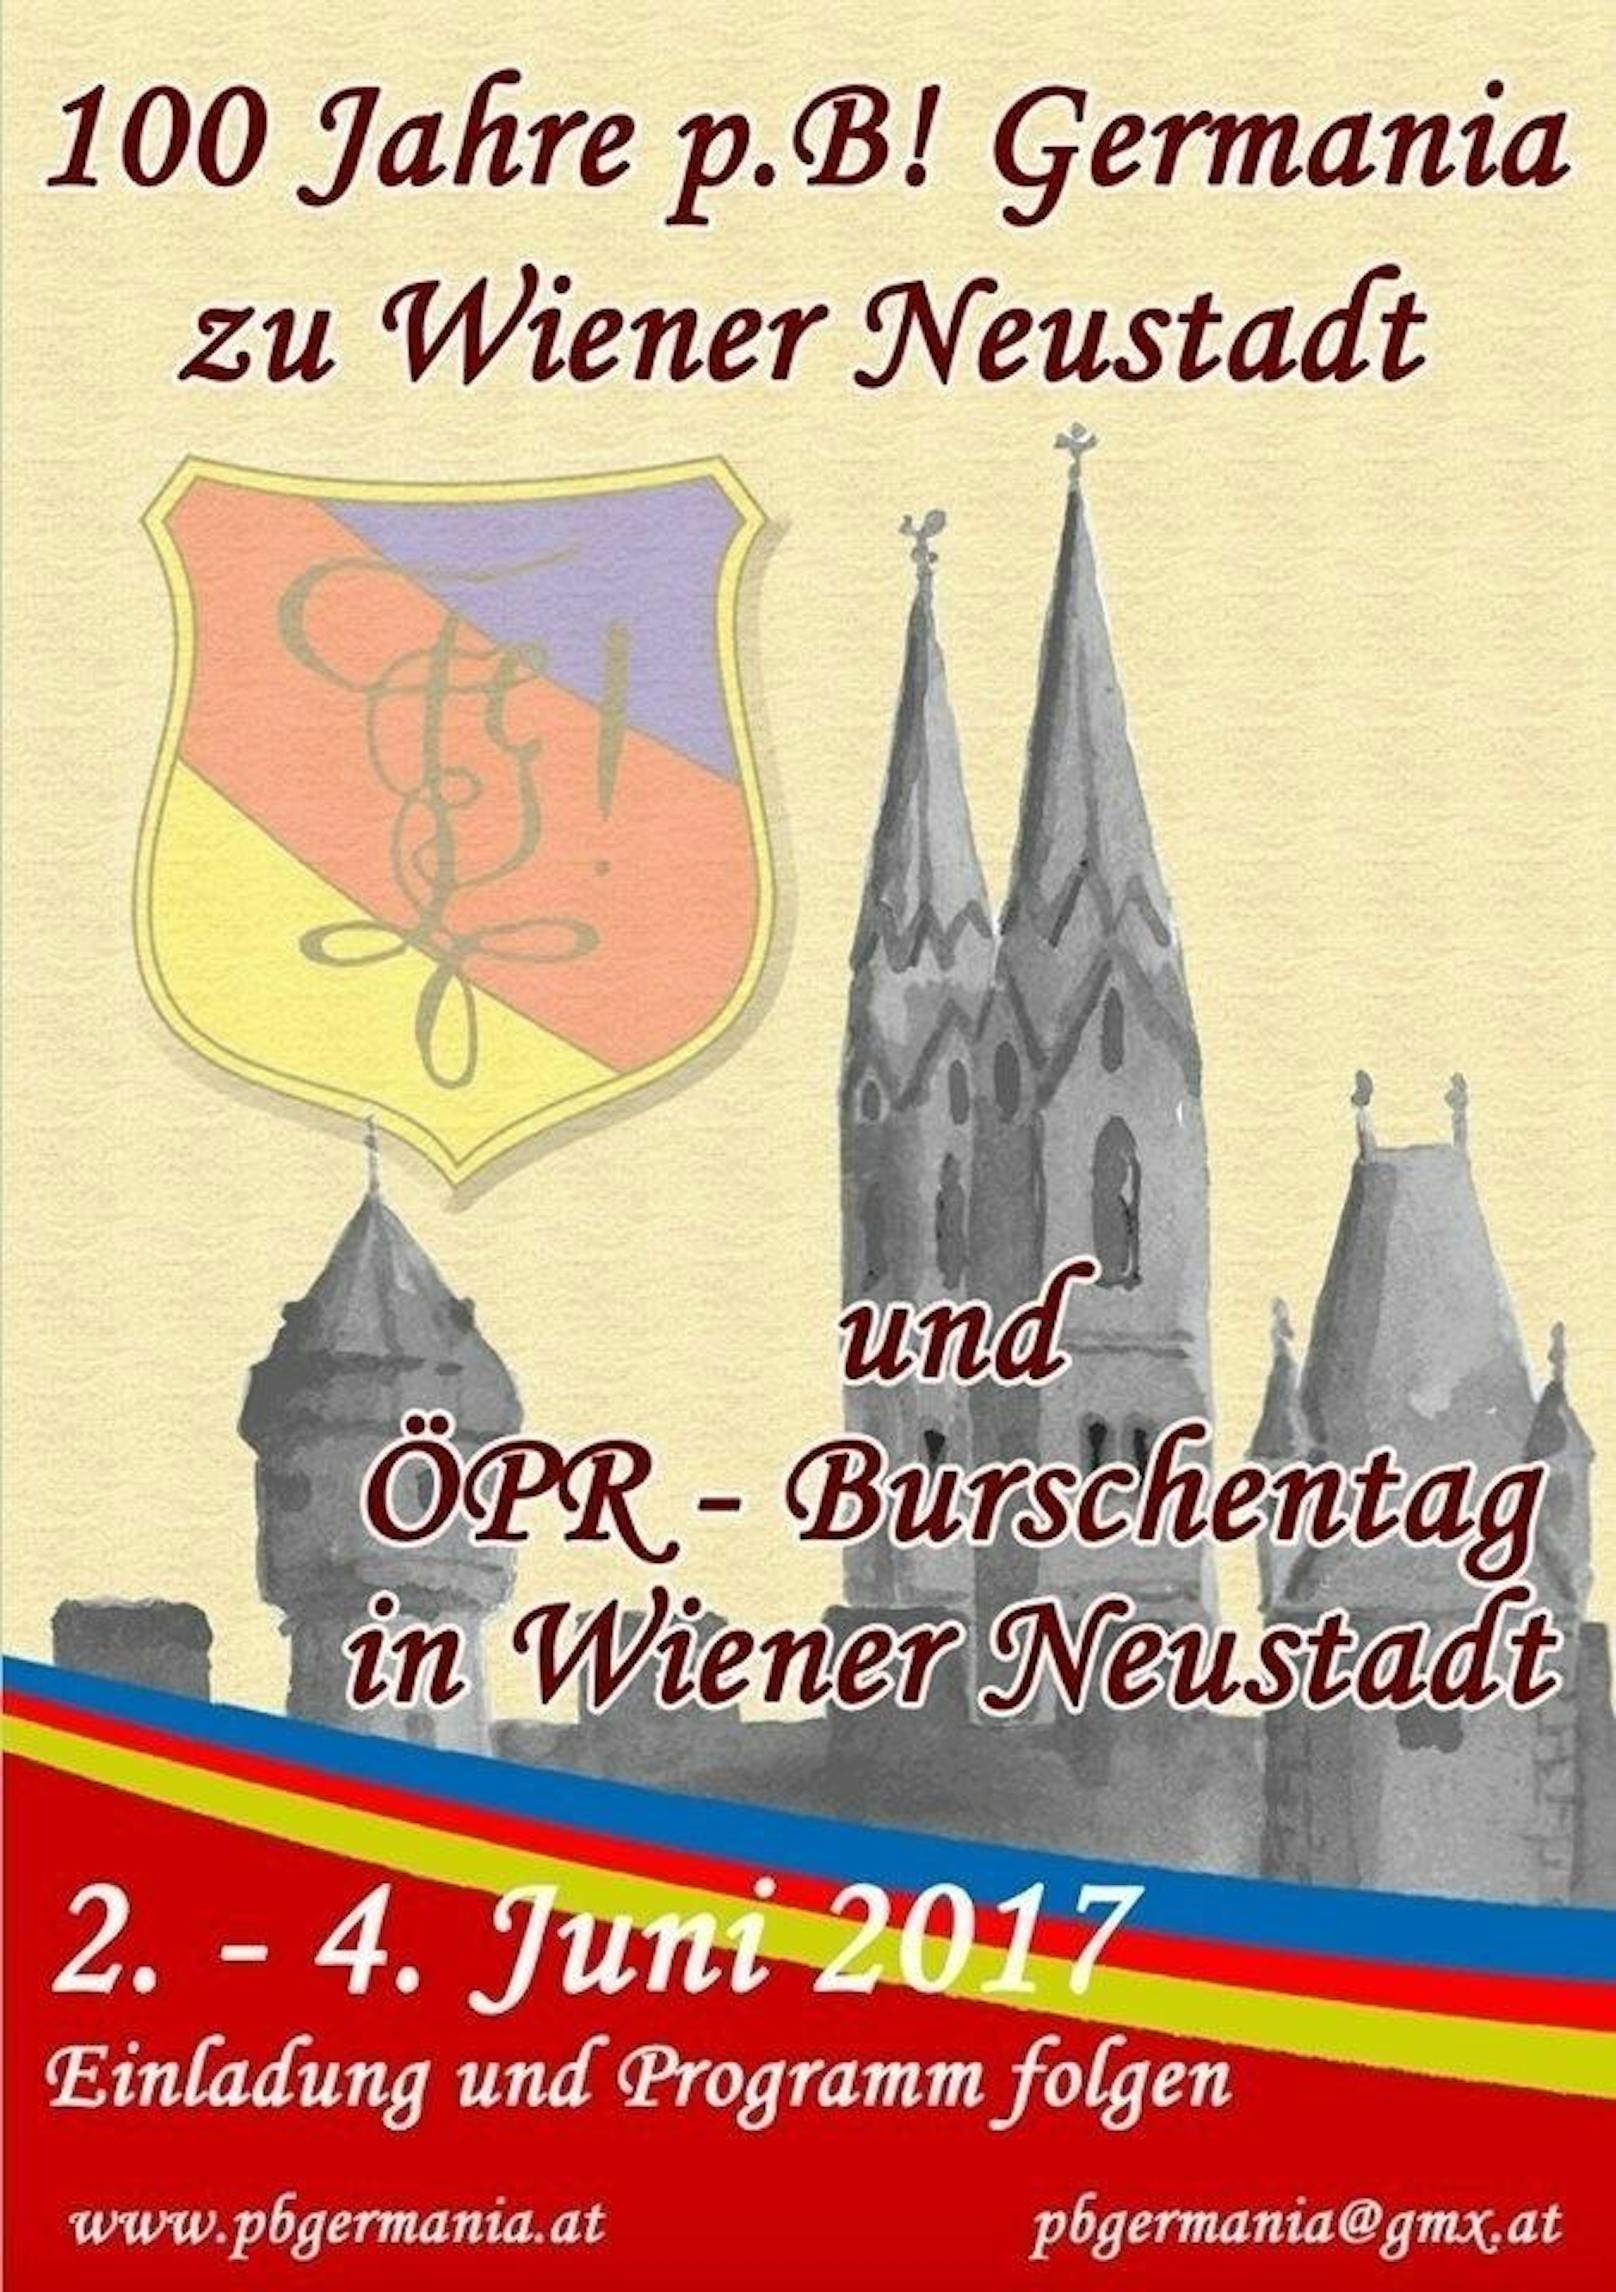 Fakt ist aber: Der Burschentag des Österreichischen Pennälerrings (ÖPR) stand ganz im Zeichen des 100-Jahre-Jubiläums der wegen Nazilieder in die Kritik geratenen Burschenschaft Germania zu Wiener Neustadt.